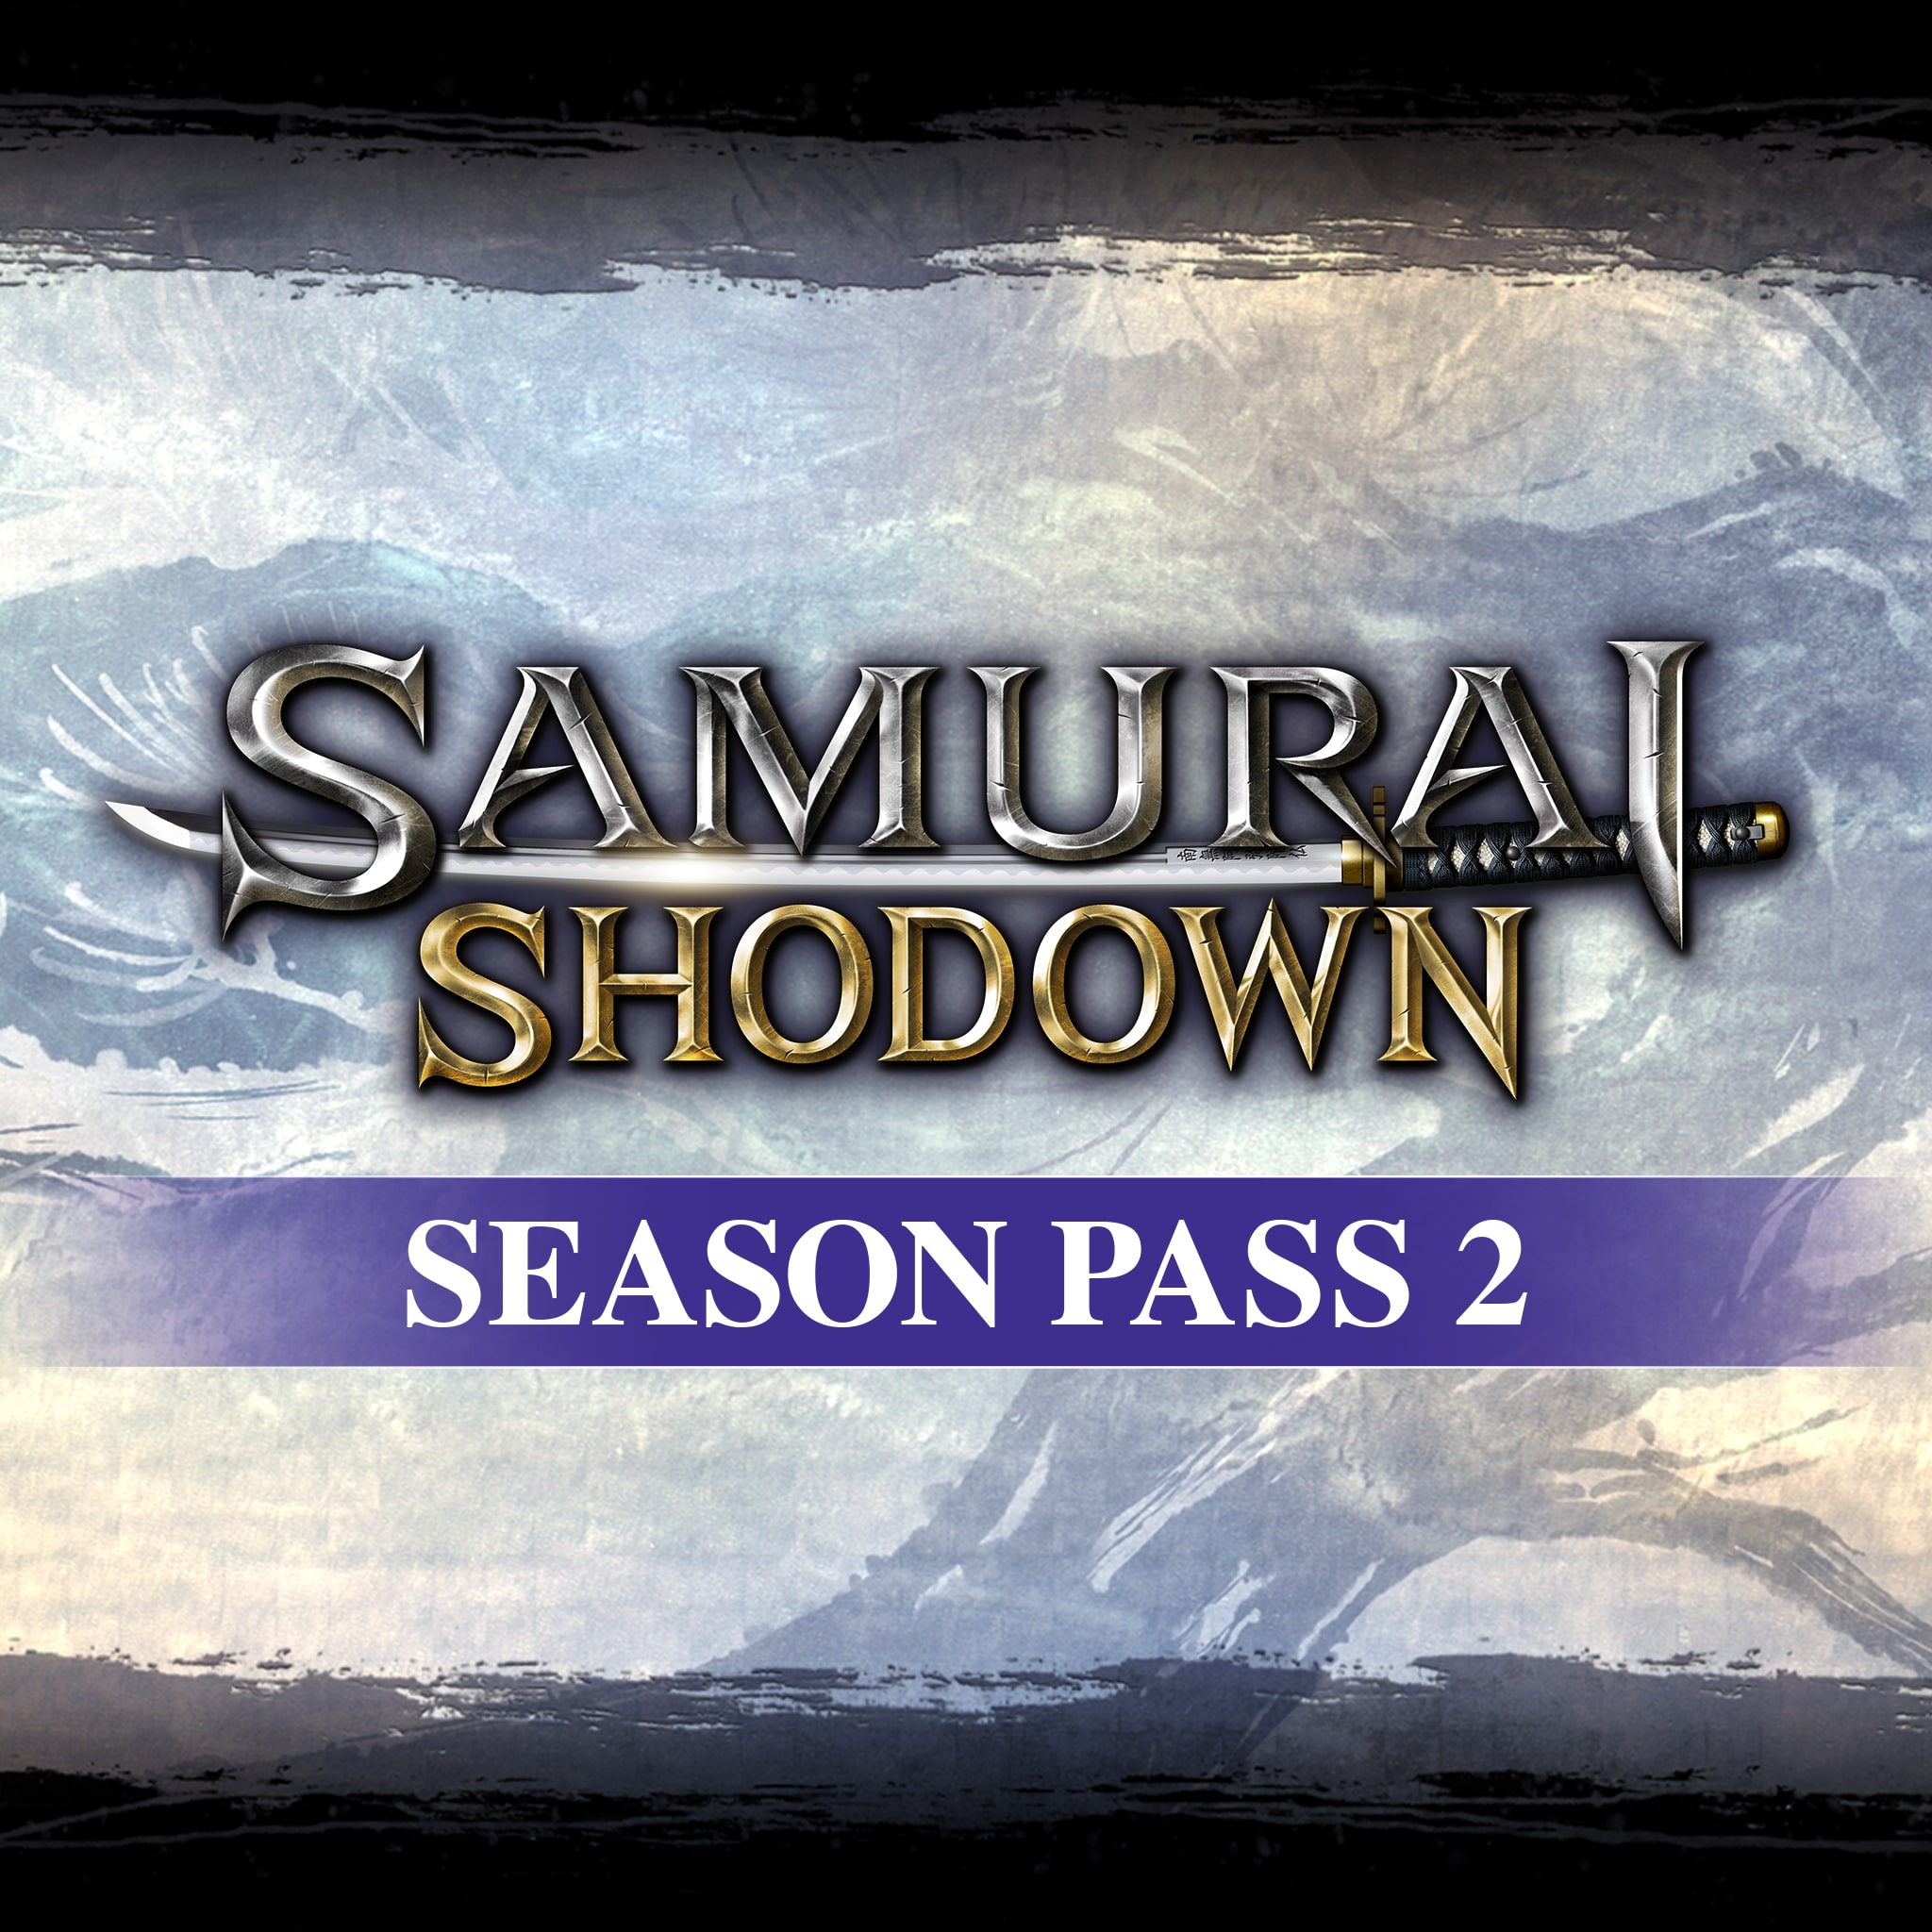 SAMURAI SHODOWN SEASON PASS 2